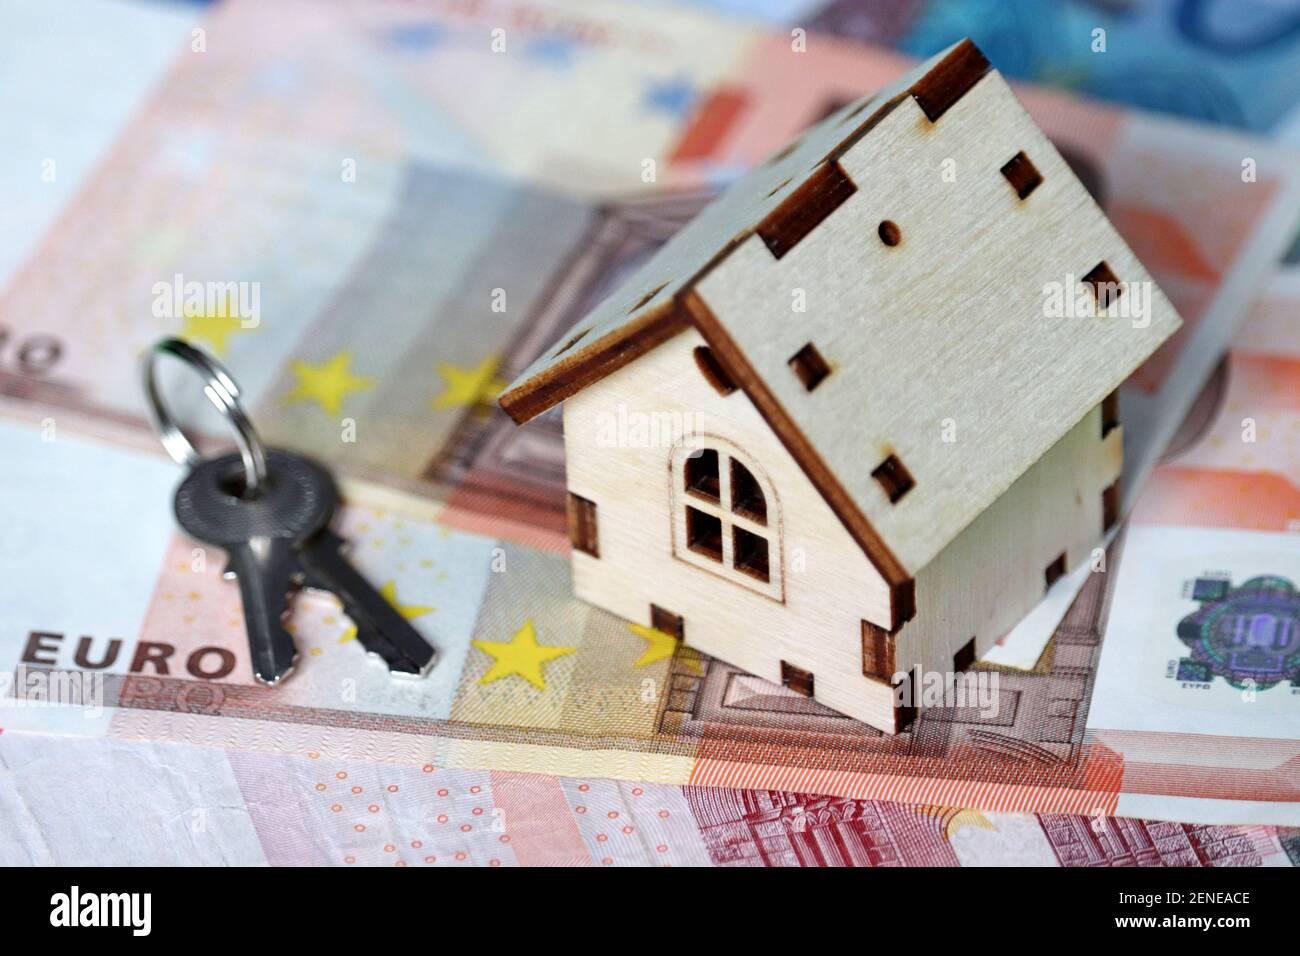 Modèle de maison en bois et clés sur fond de billets en euros. Marché du logement, achat ou location de biens immobiliers en Europe Banque D'Images